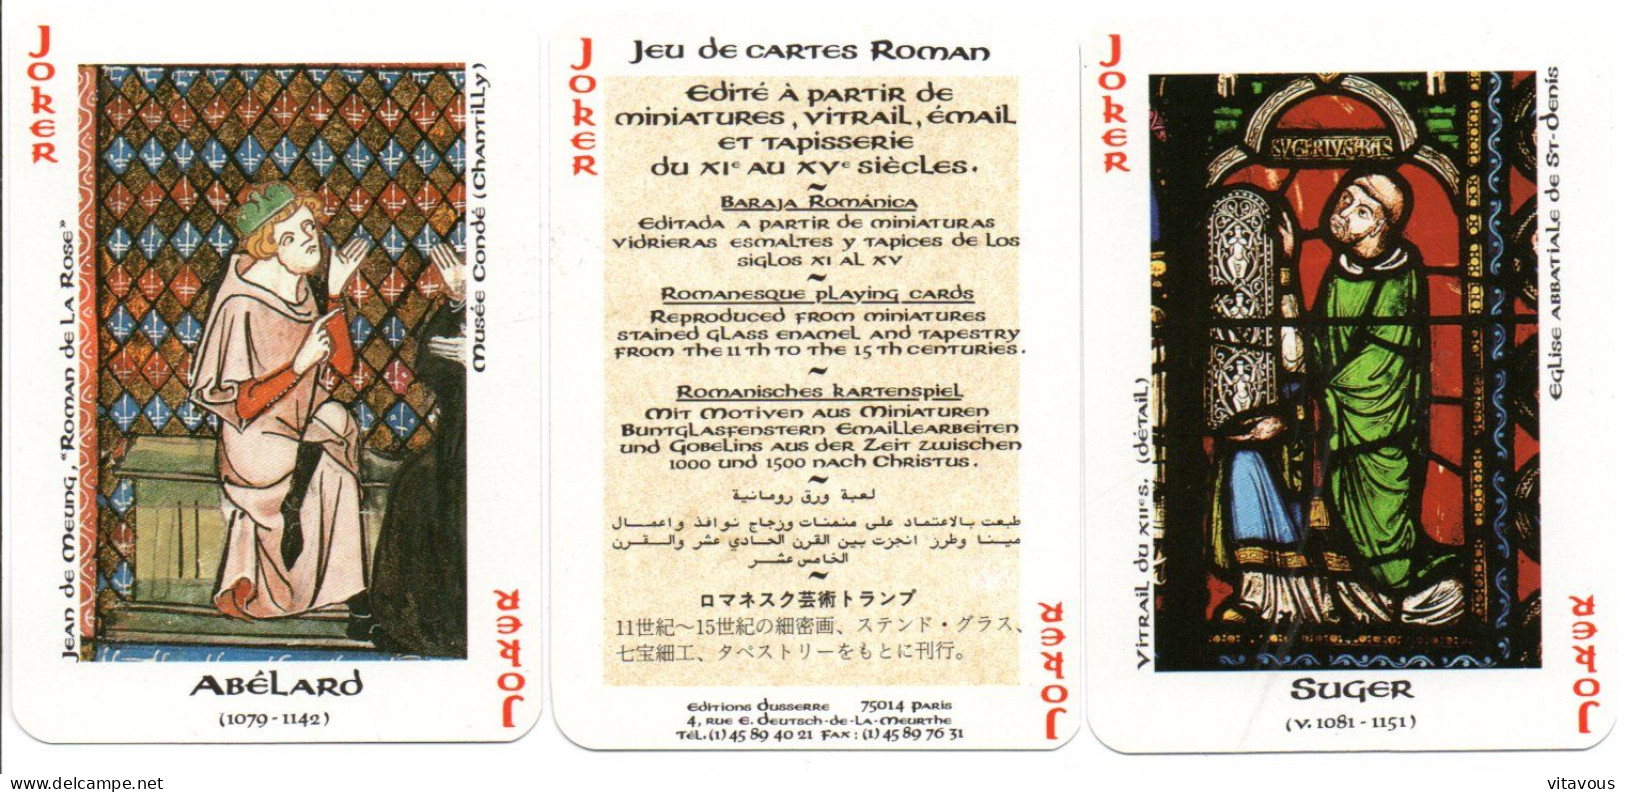 Jeu De 54 Cartes ROMAND Playing Cards - 54 Cartas